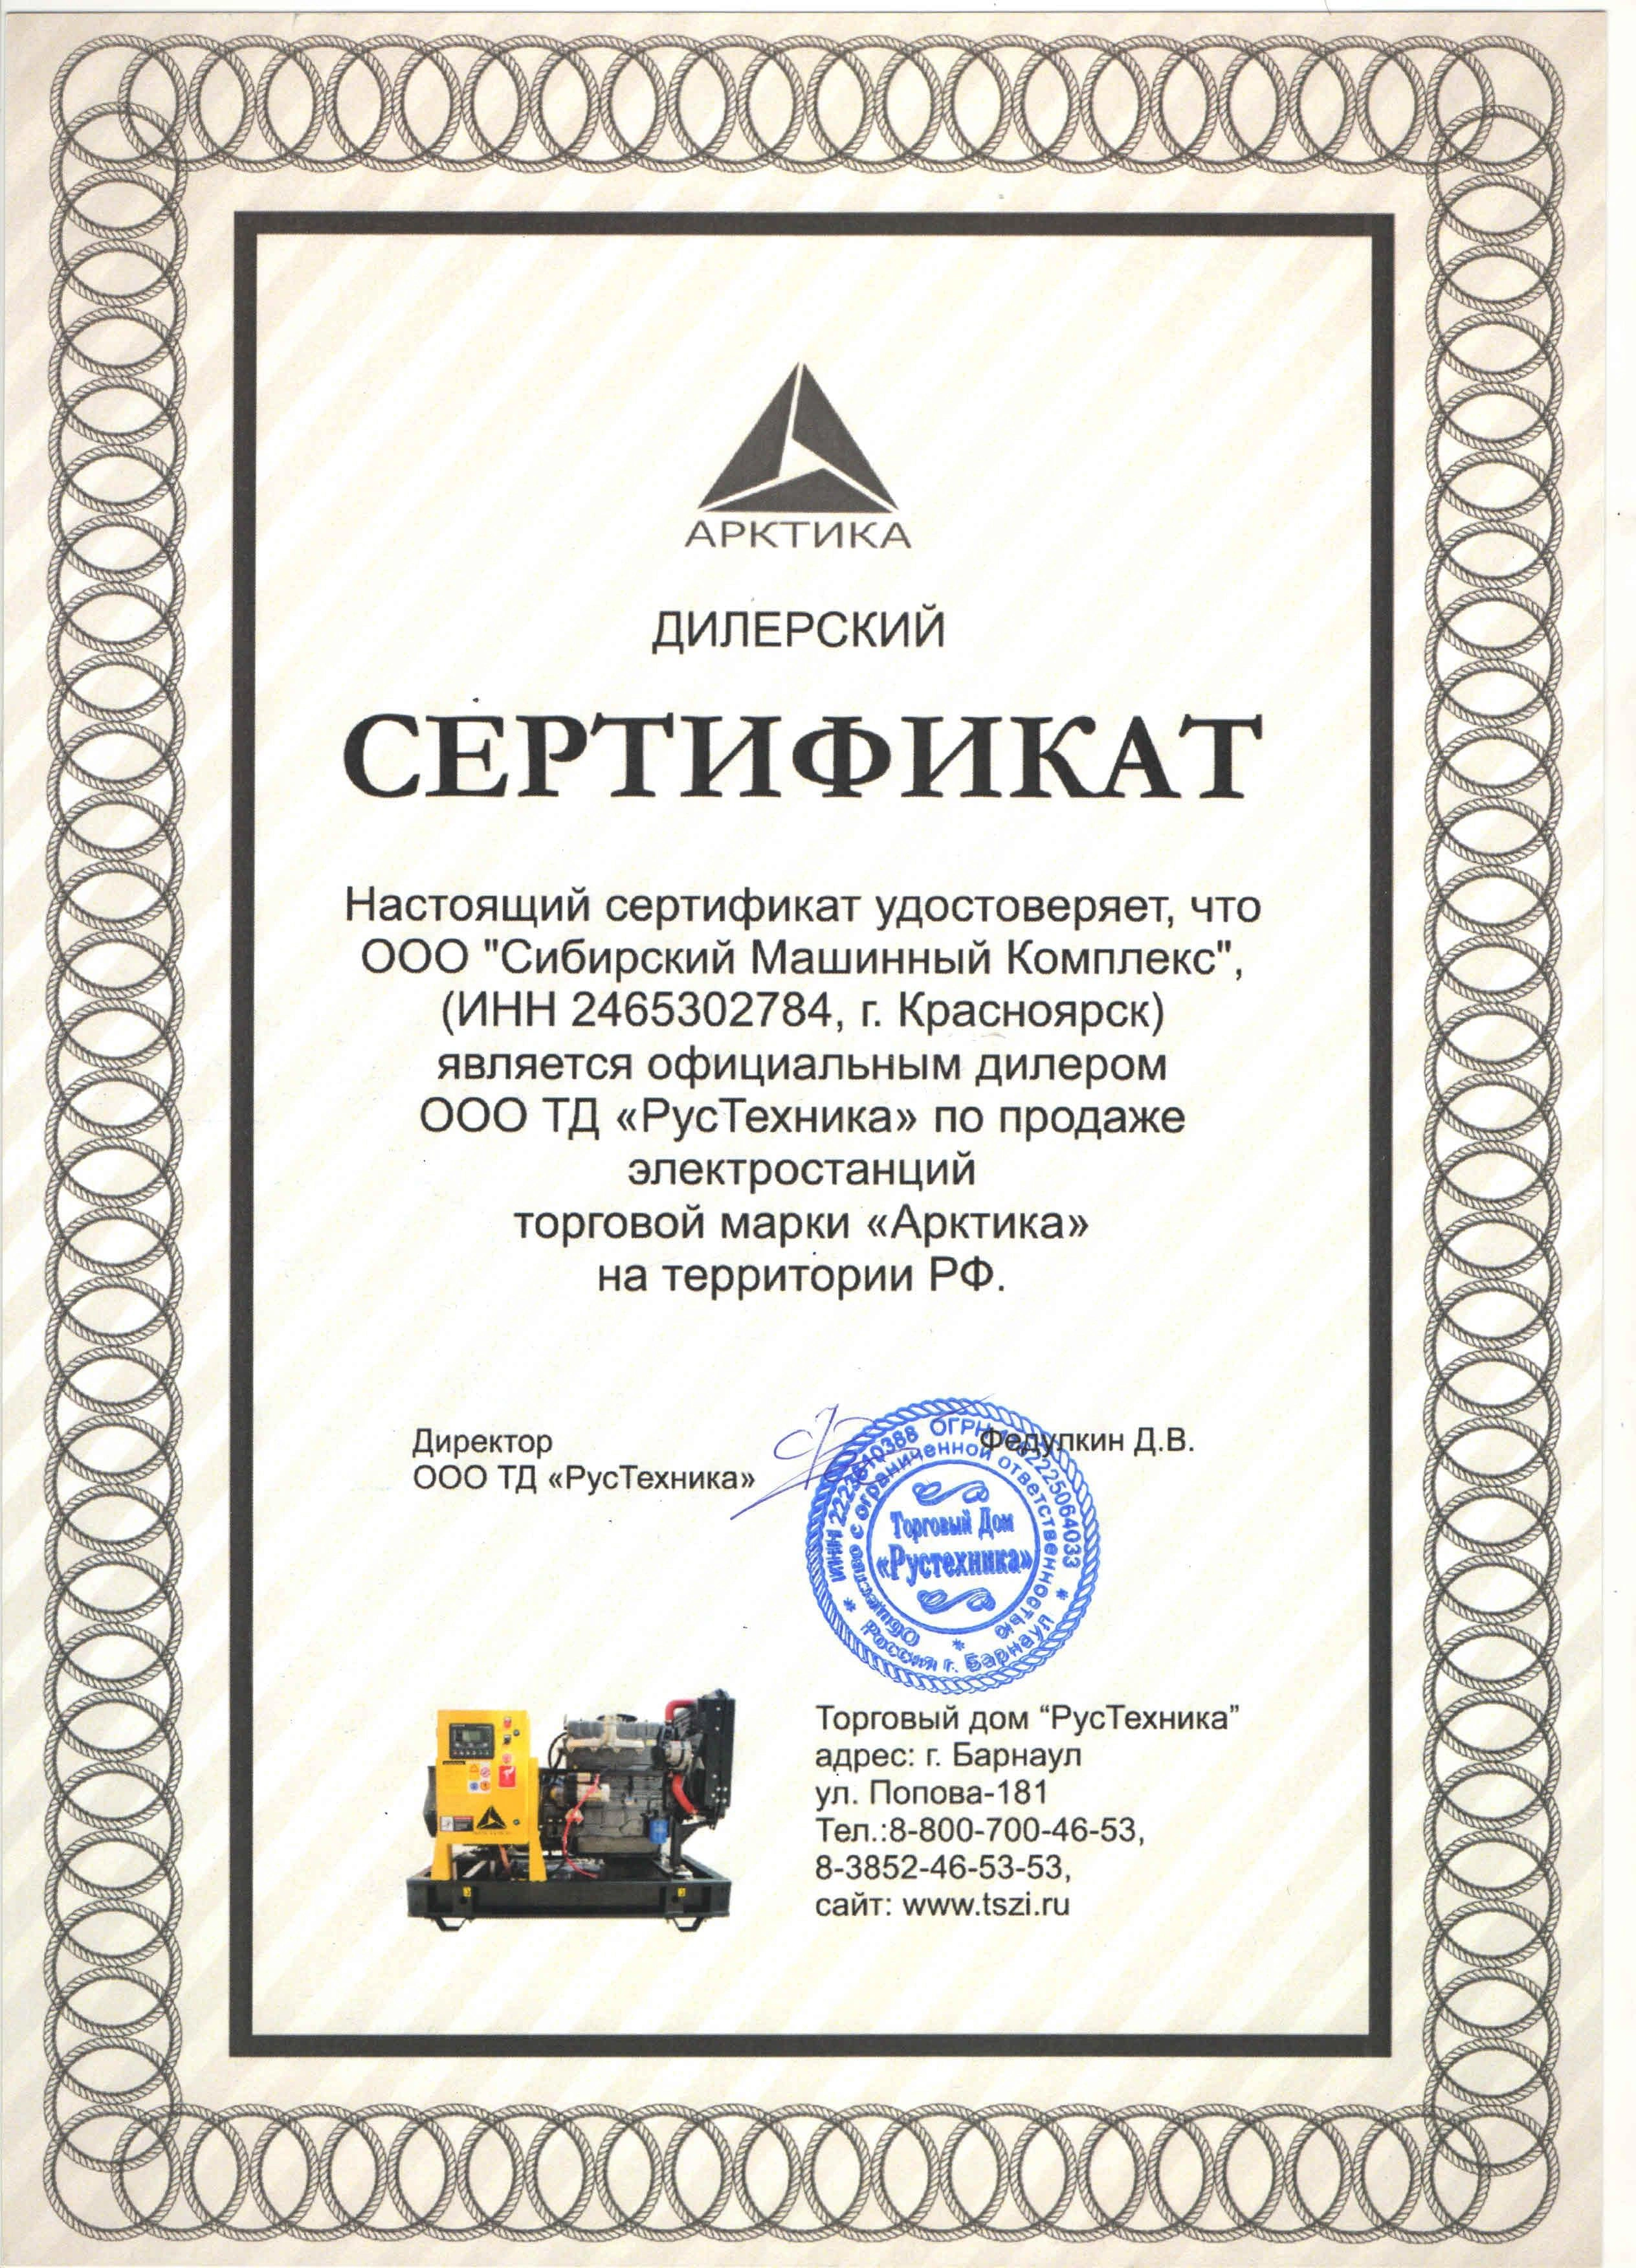 Сертификат дилерства ООО ТД «РусТехника» – СМК г. Ленинск-Кузнецкий